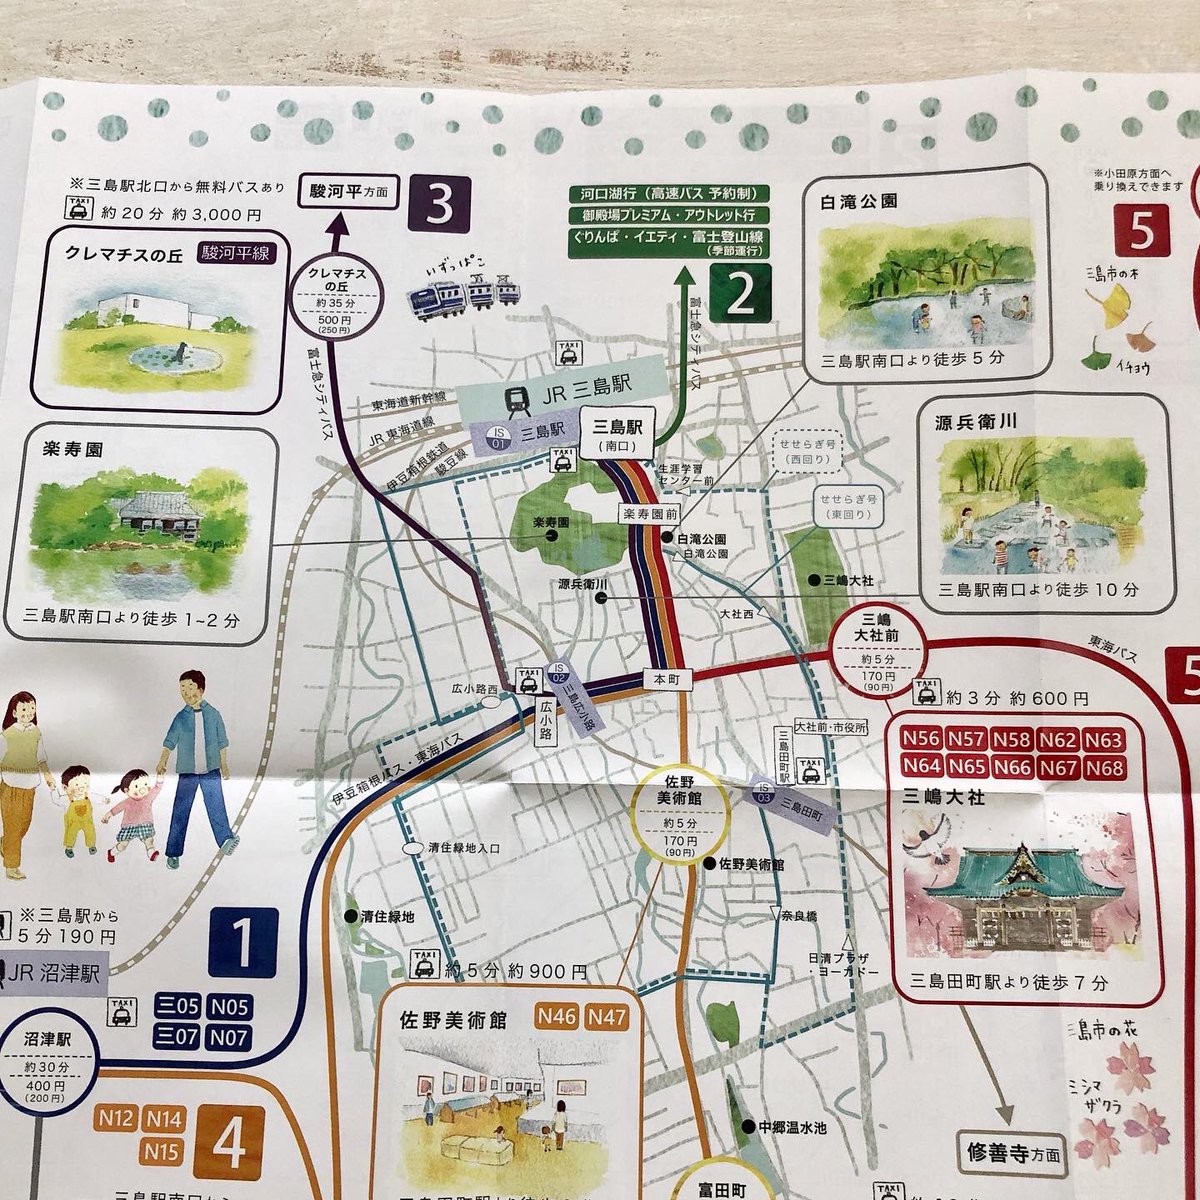 「乗って 旅する みしまっぷ」
できました‥やっと‥
(発行:三島市地域公共交通網形成協議会)

観光スポットの絵も描きました💪
表紙にいるファミリーが、各名所をまわって遊んでいます。 